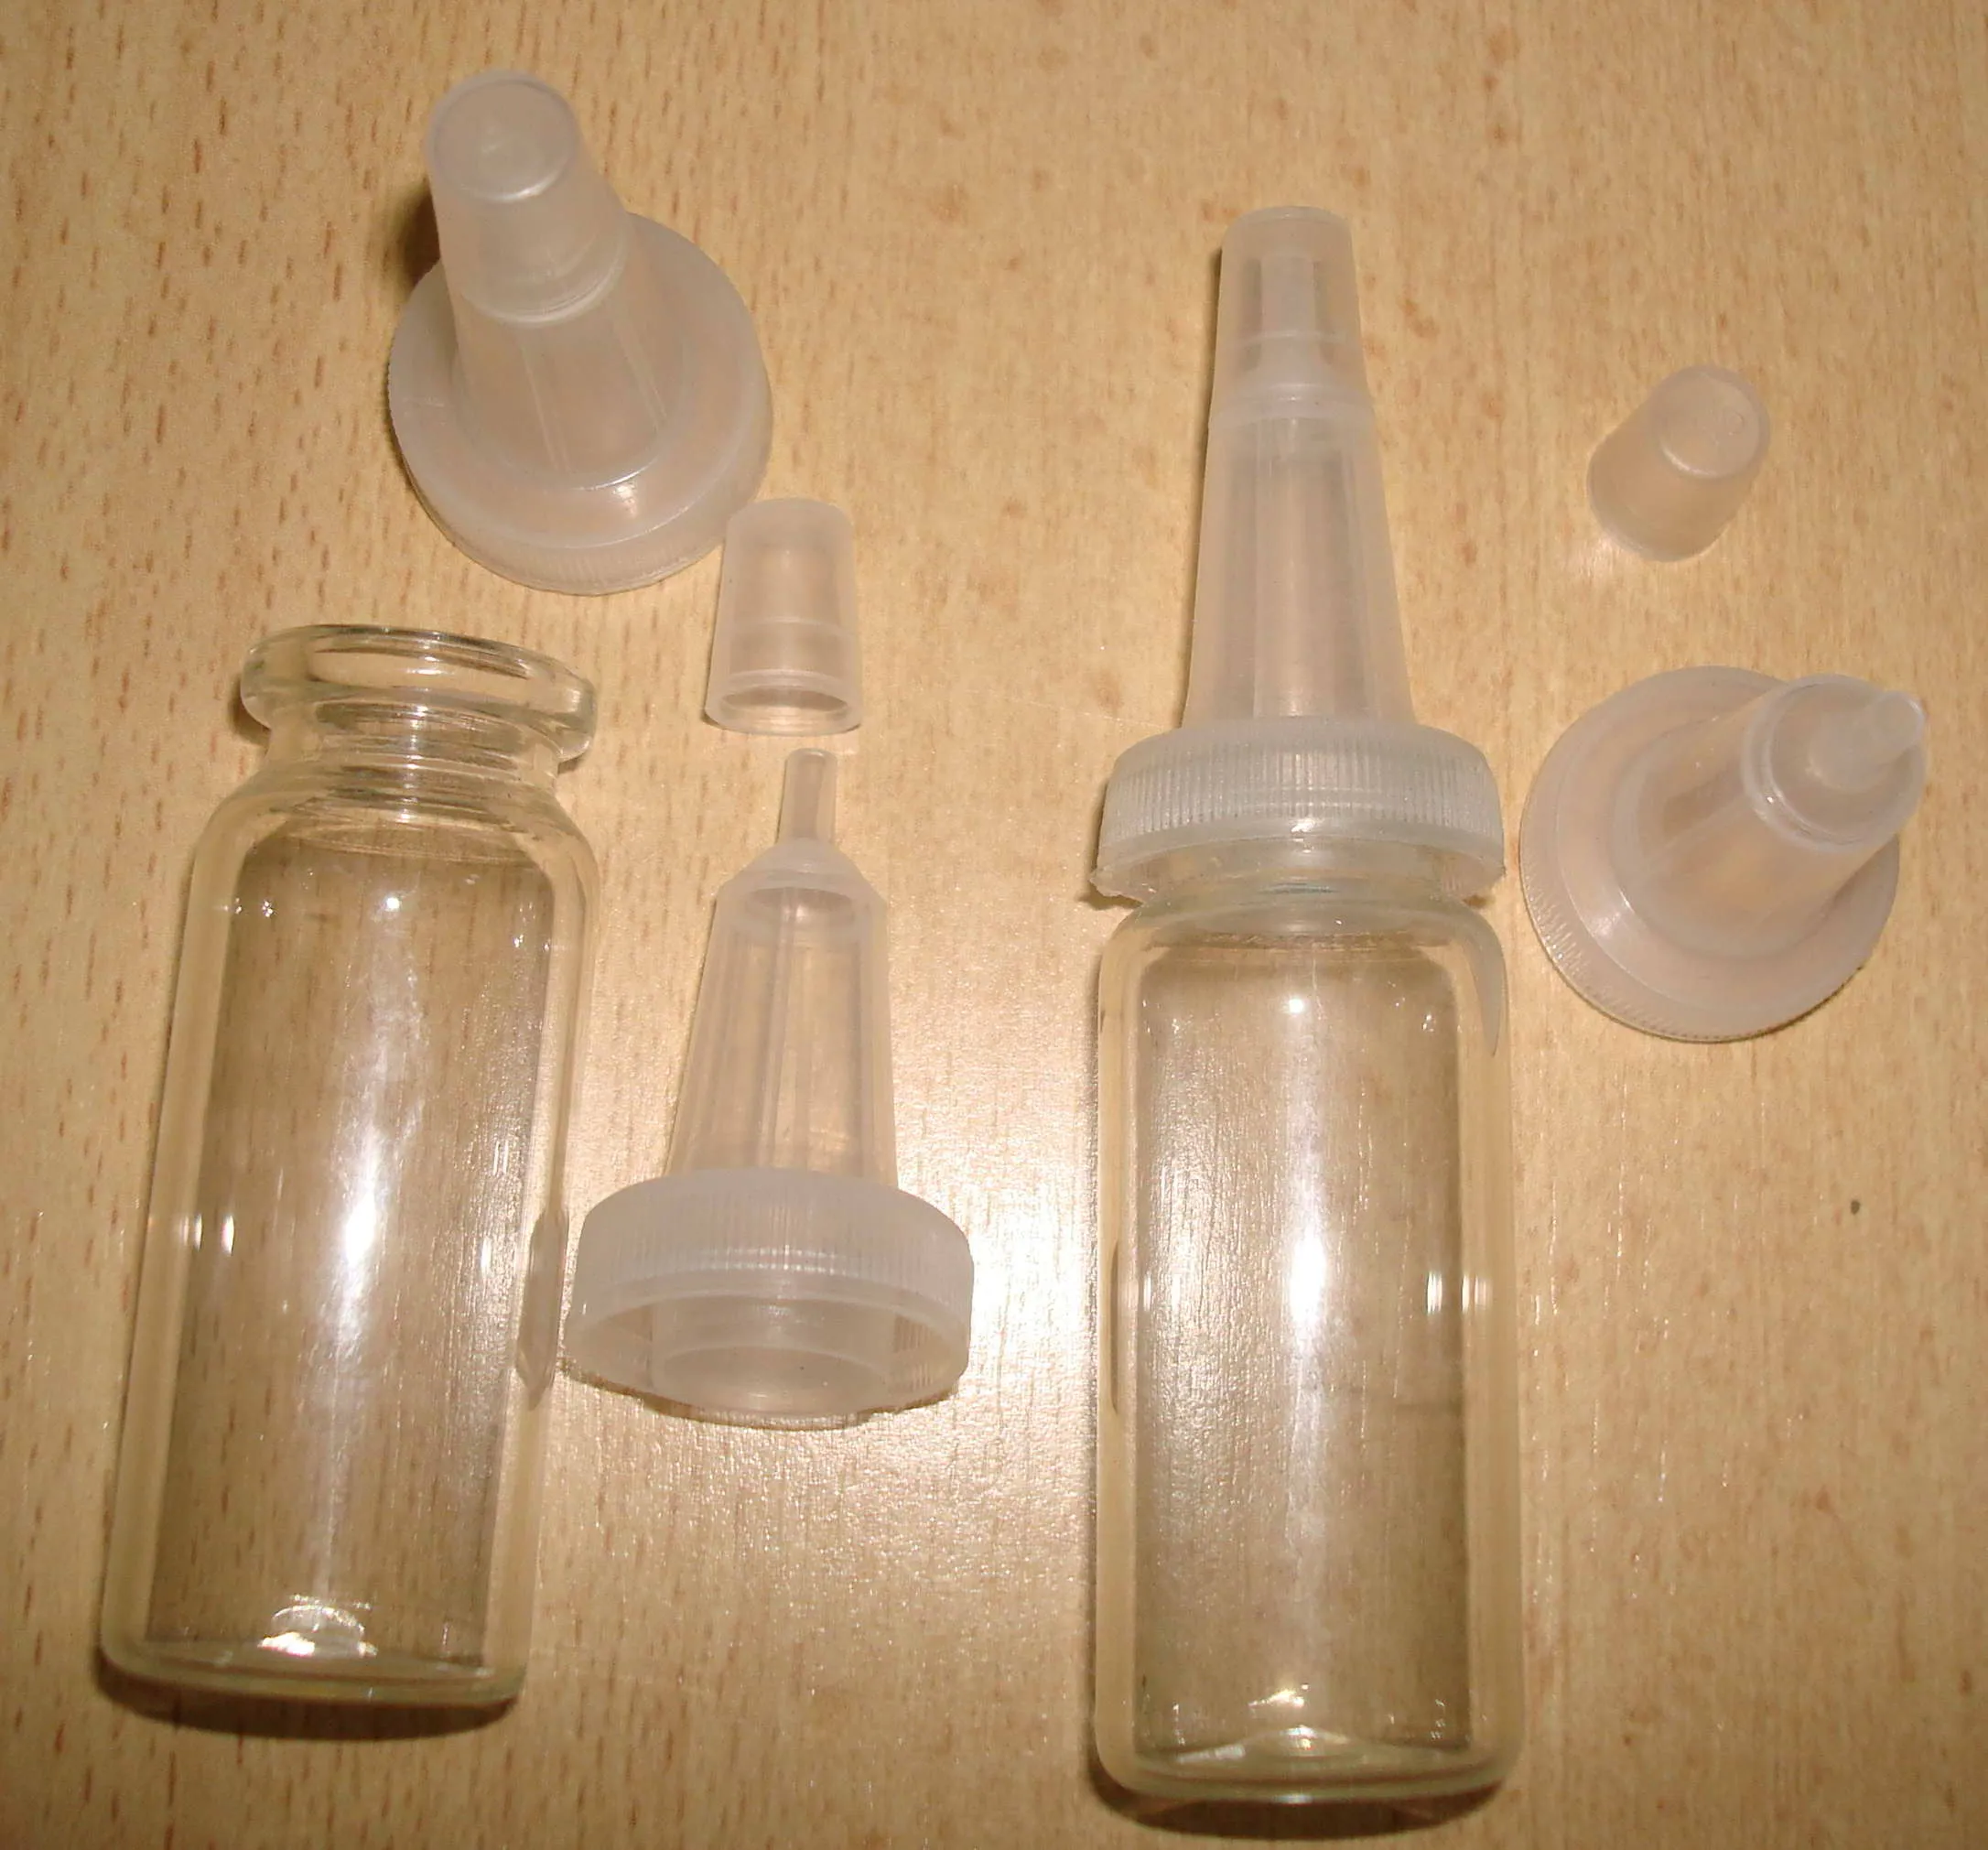 Расходные материалы для лабораторий из пластика (наконечники, микропробирки)#3